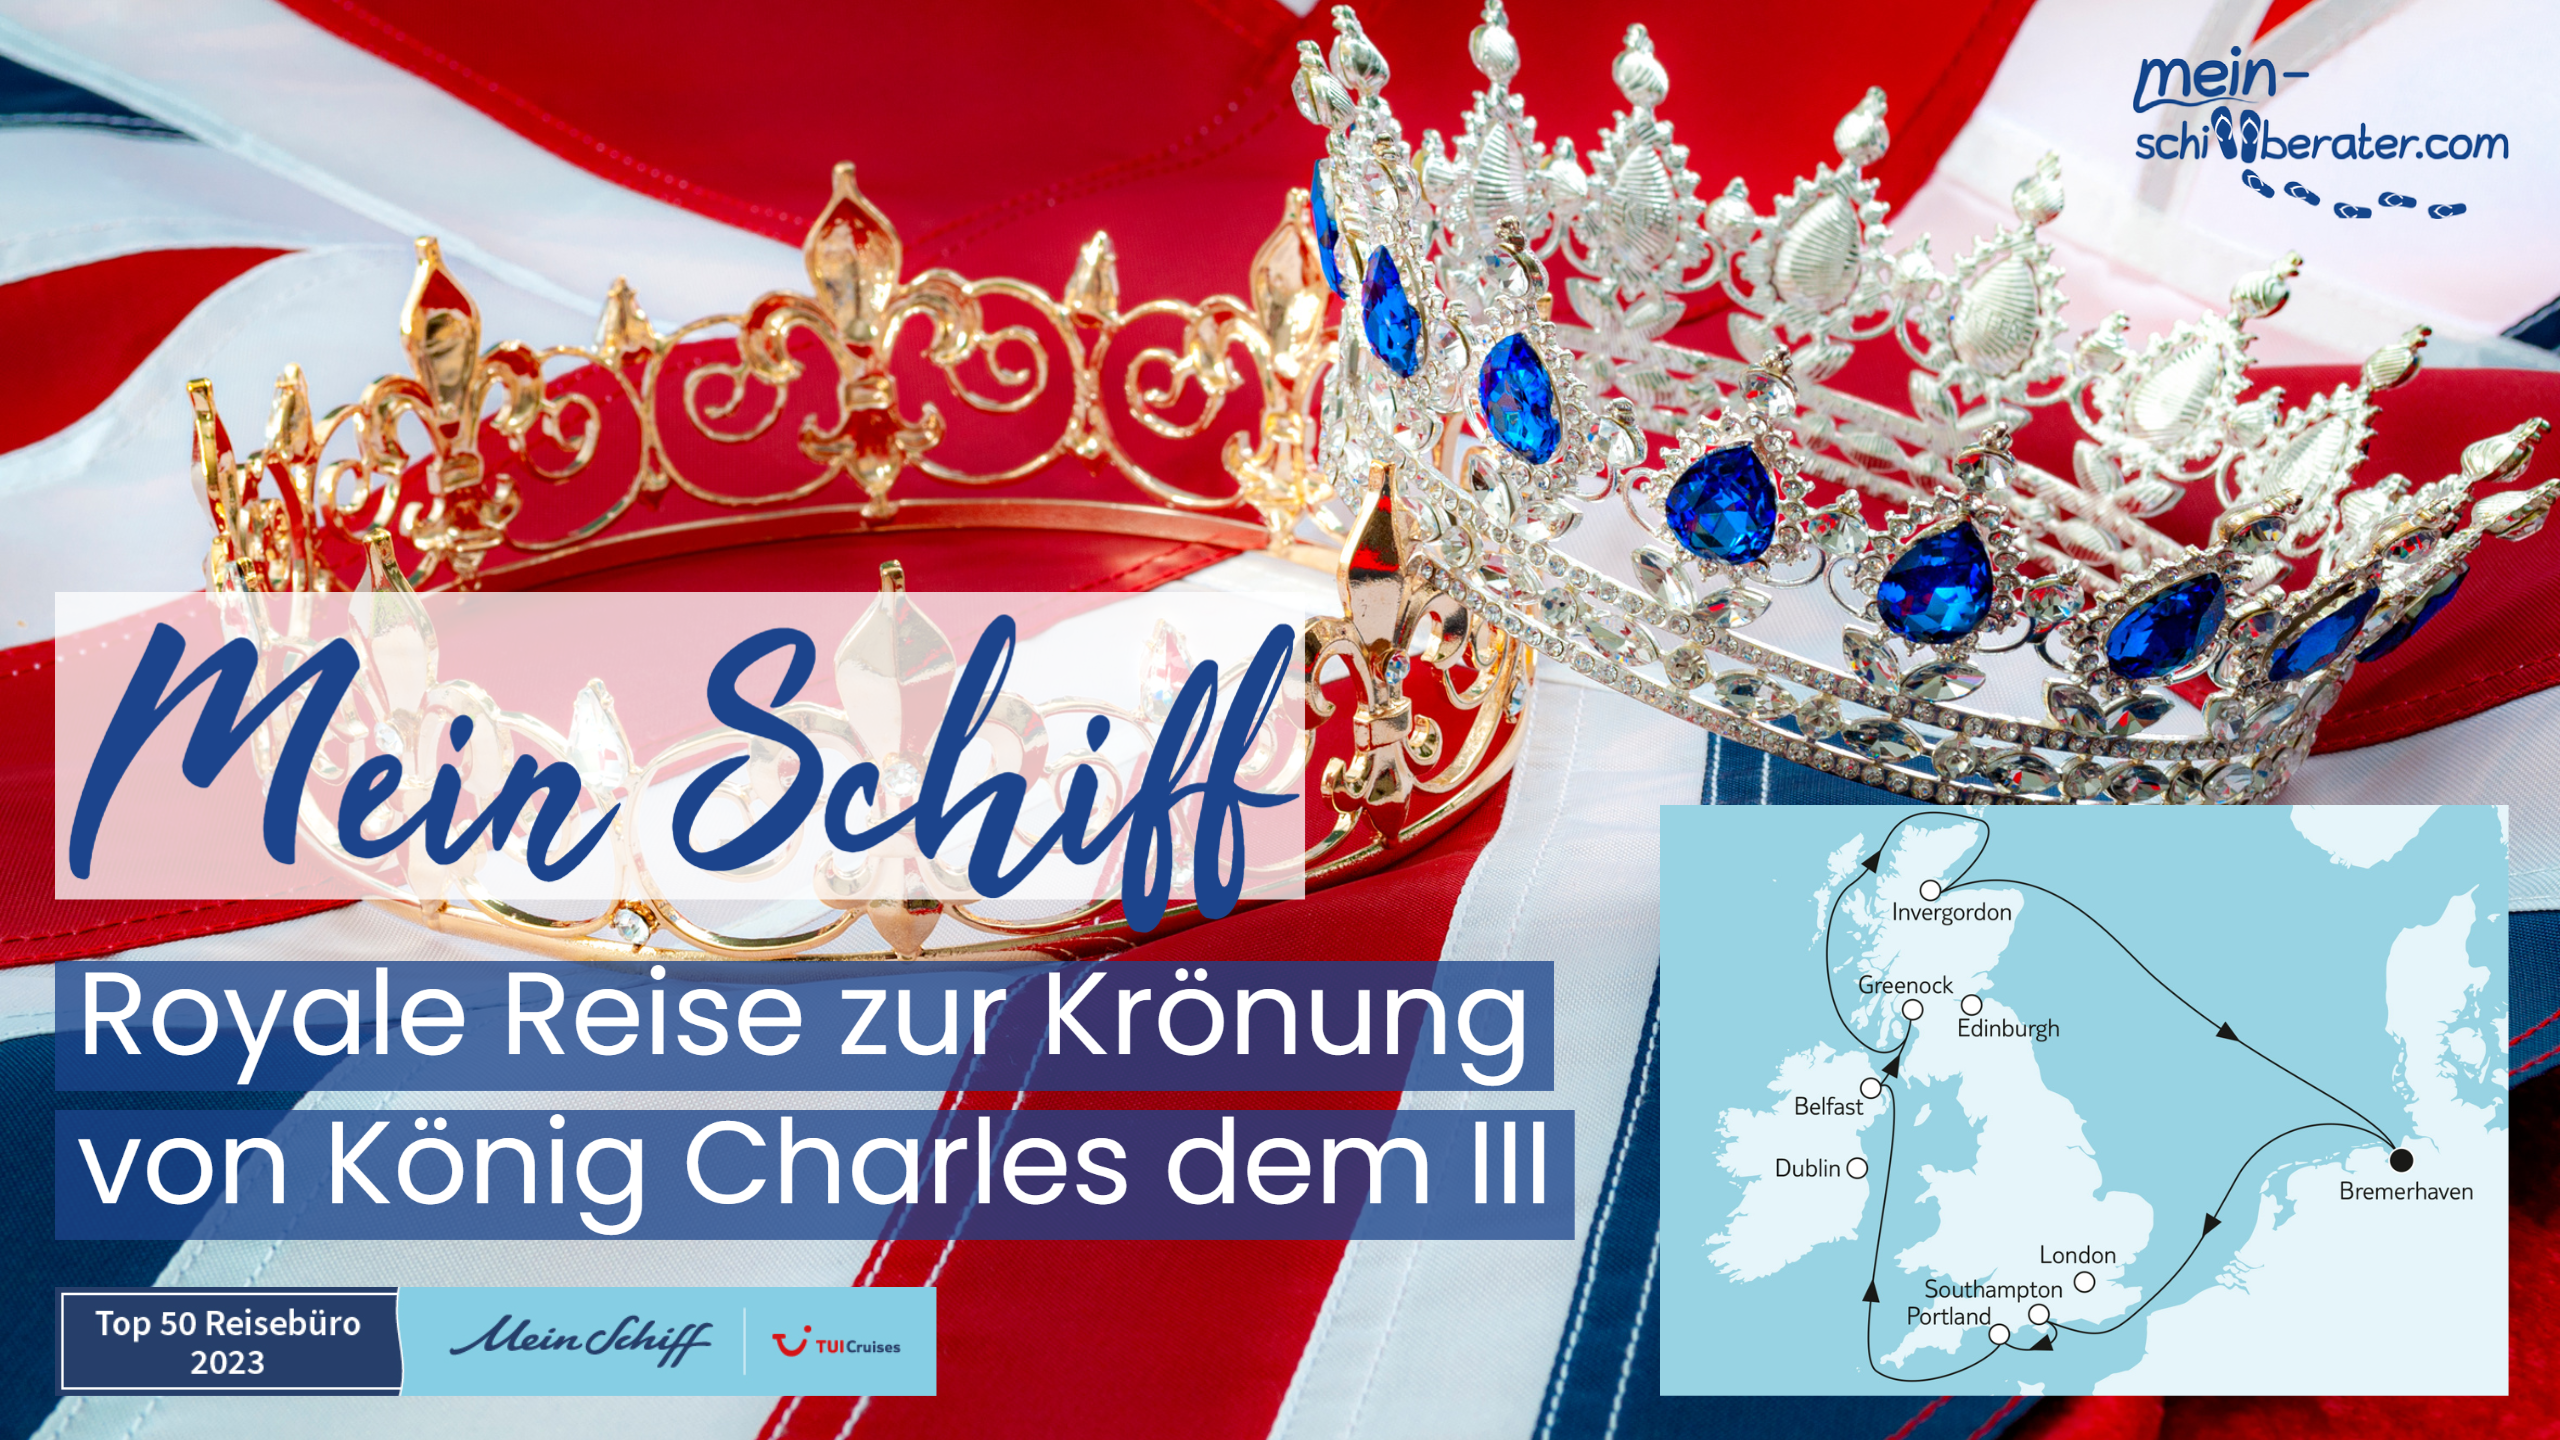 Sail into Royalty: Royale Reise zur Krönung von König Charles III